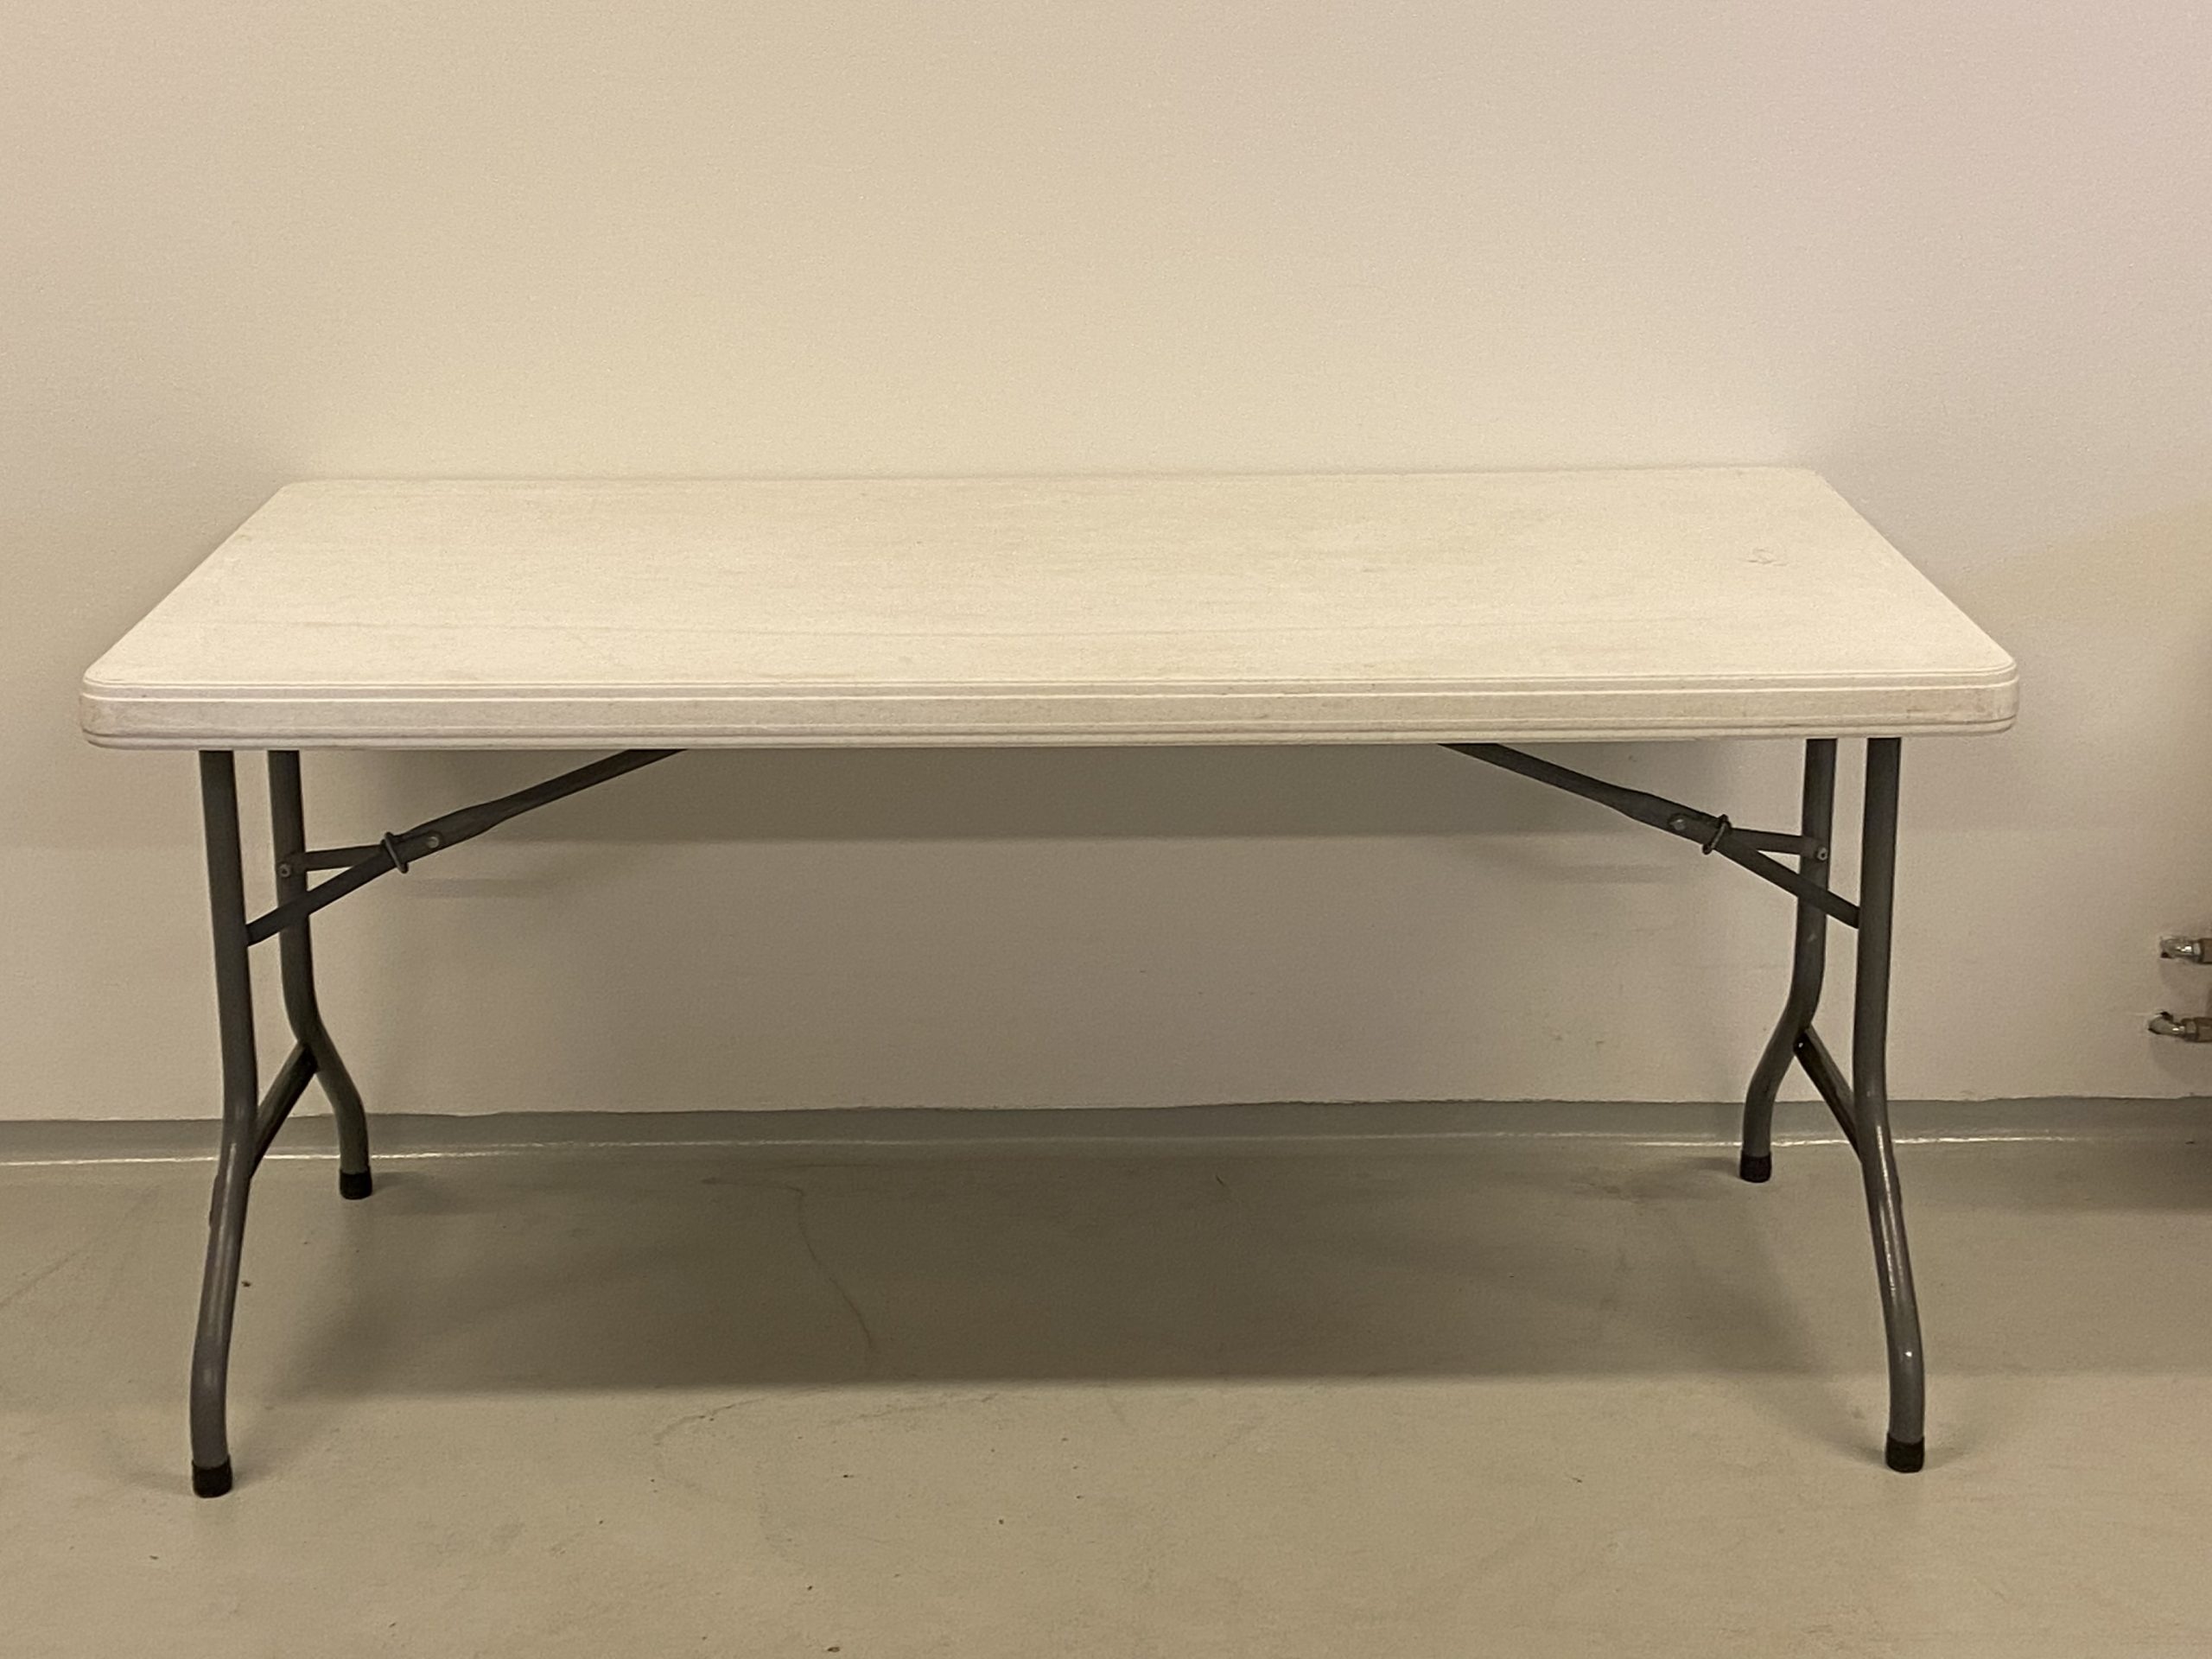 På billedet er et fint aflangt bord med hvid plastikplade og stålben.